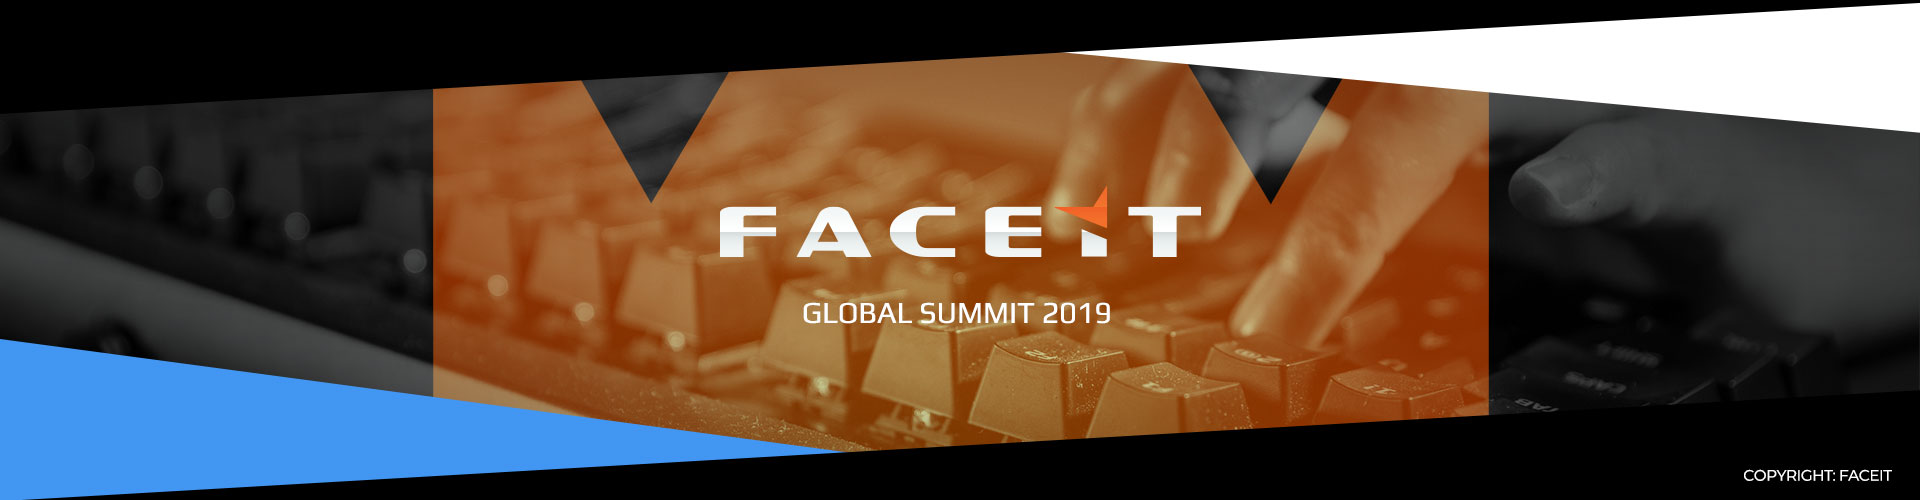 Eventsida om FACE Global Summit och deras turnering i PUBG.